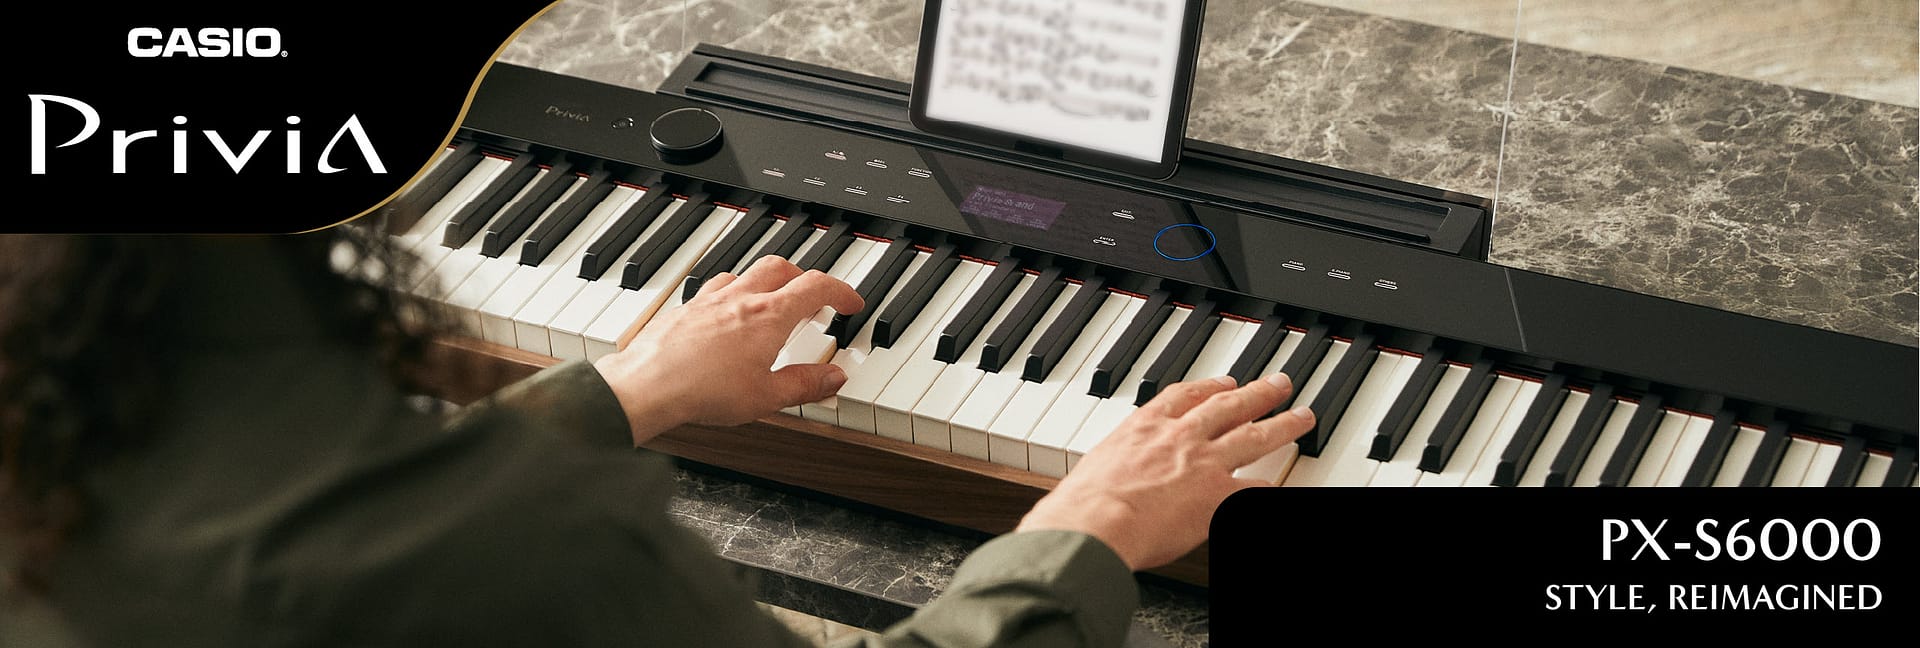 Casio Privia PX-S6000 Digital Piano